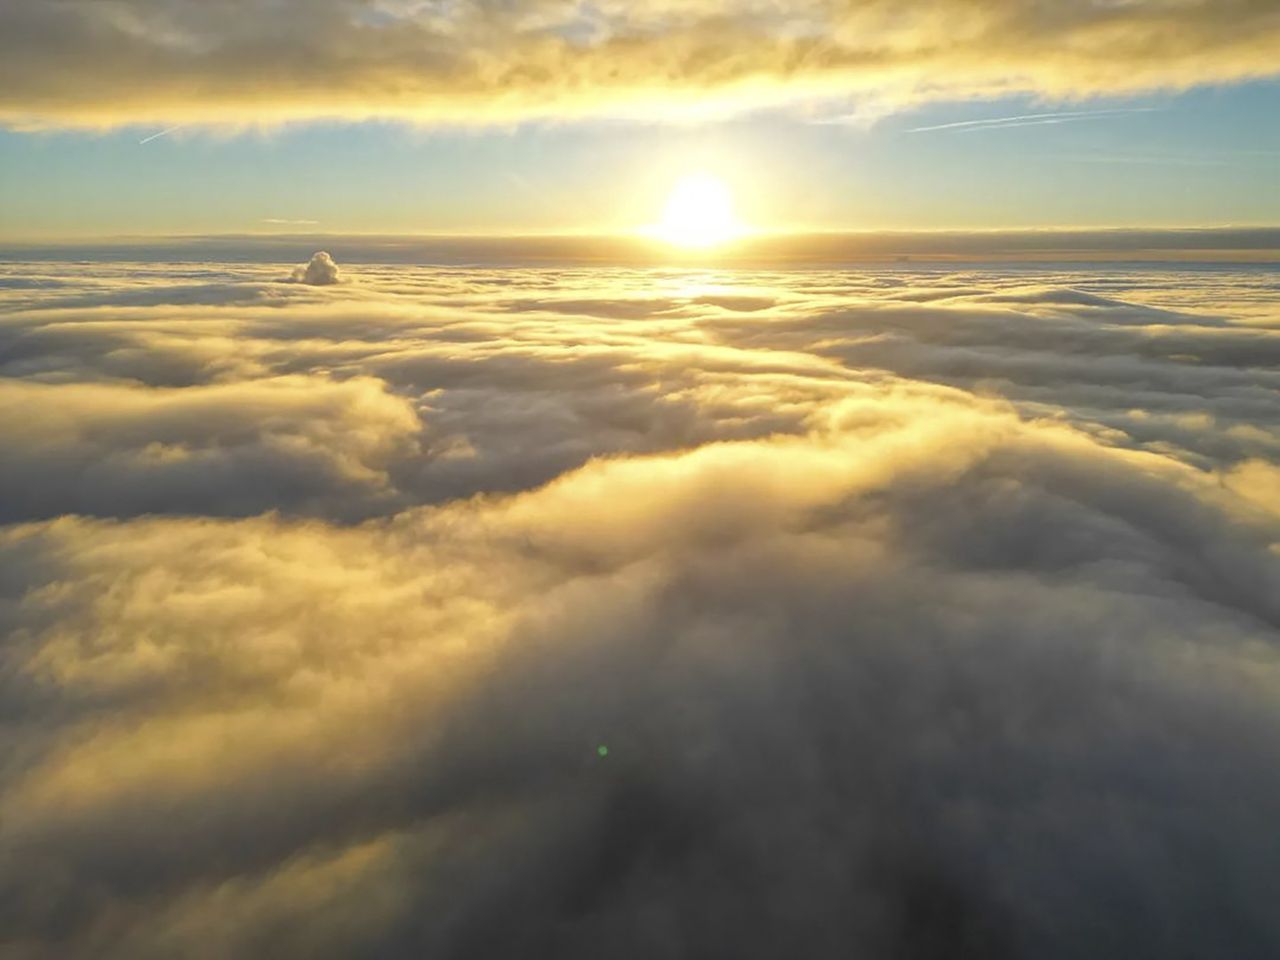 Dziwne zjawisko w chmurach. Bez drona nie byłoby go widać